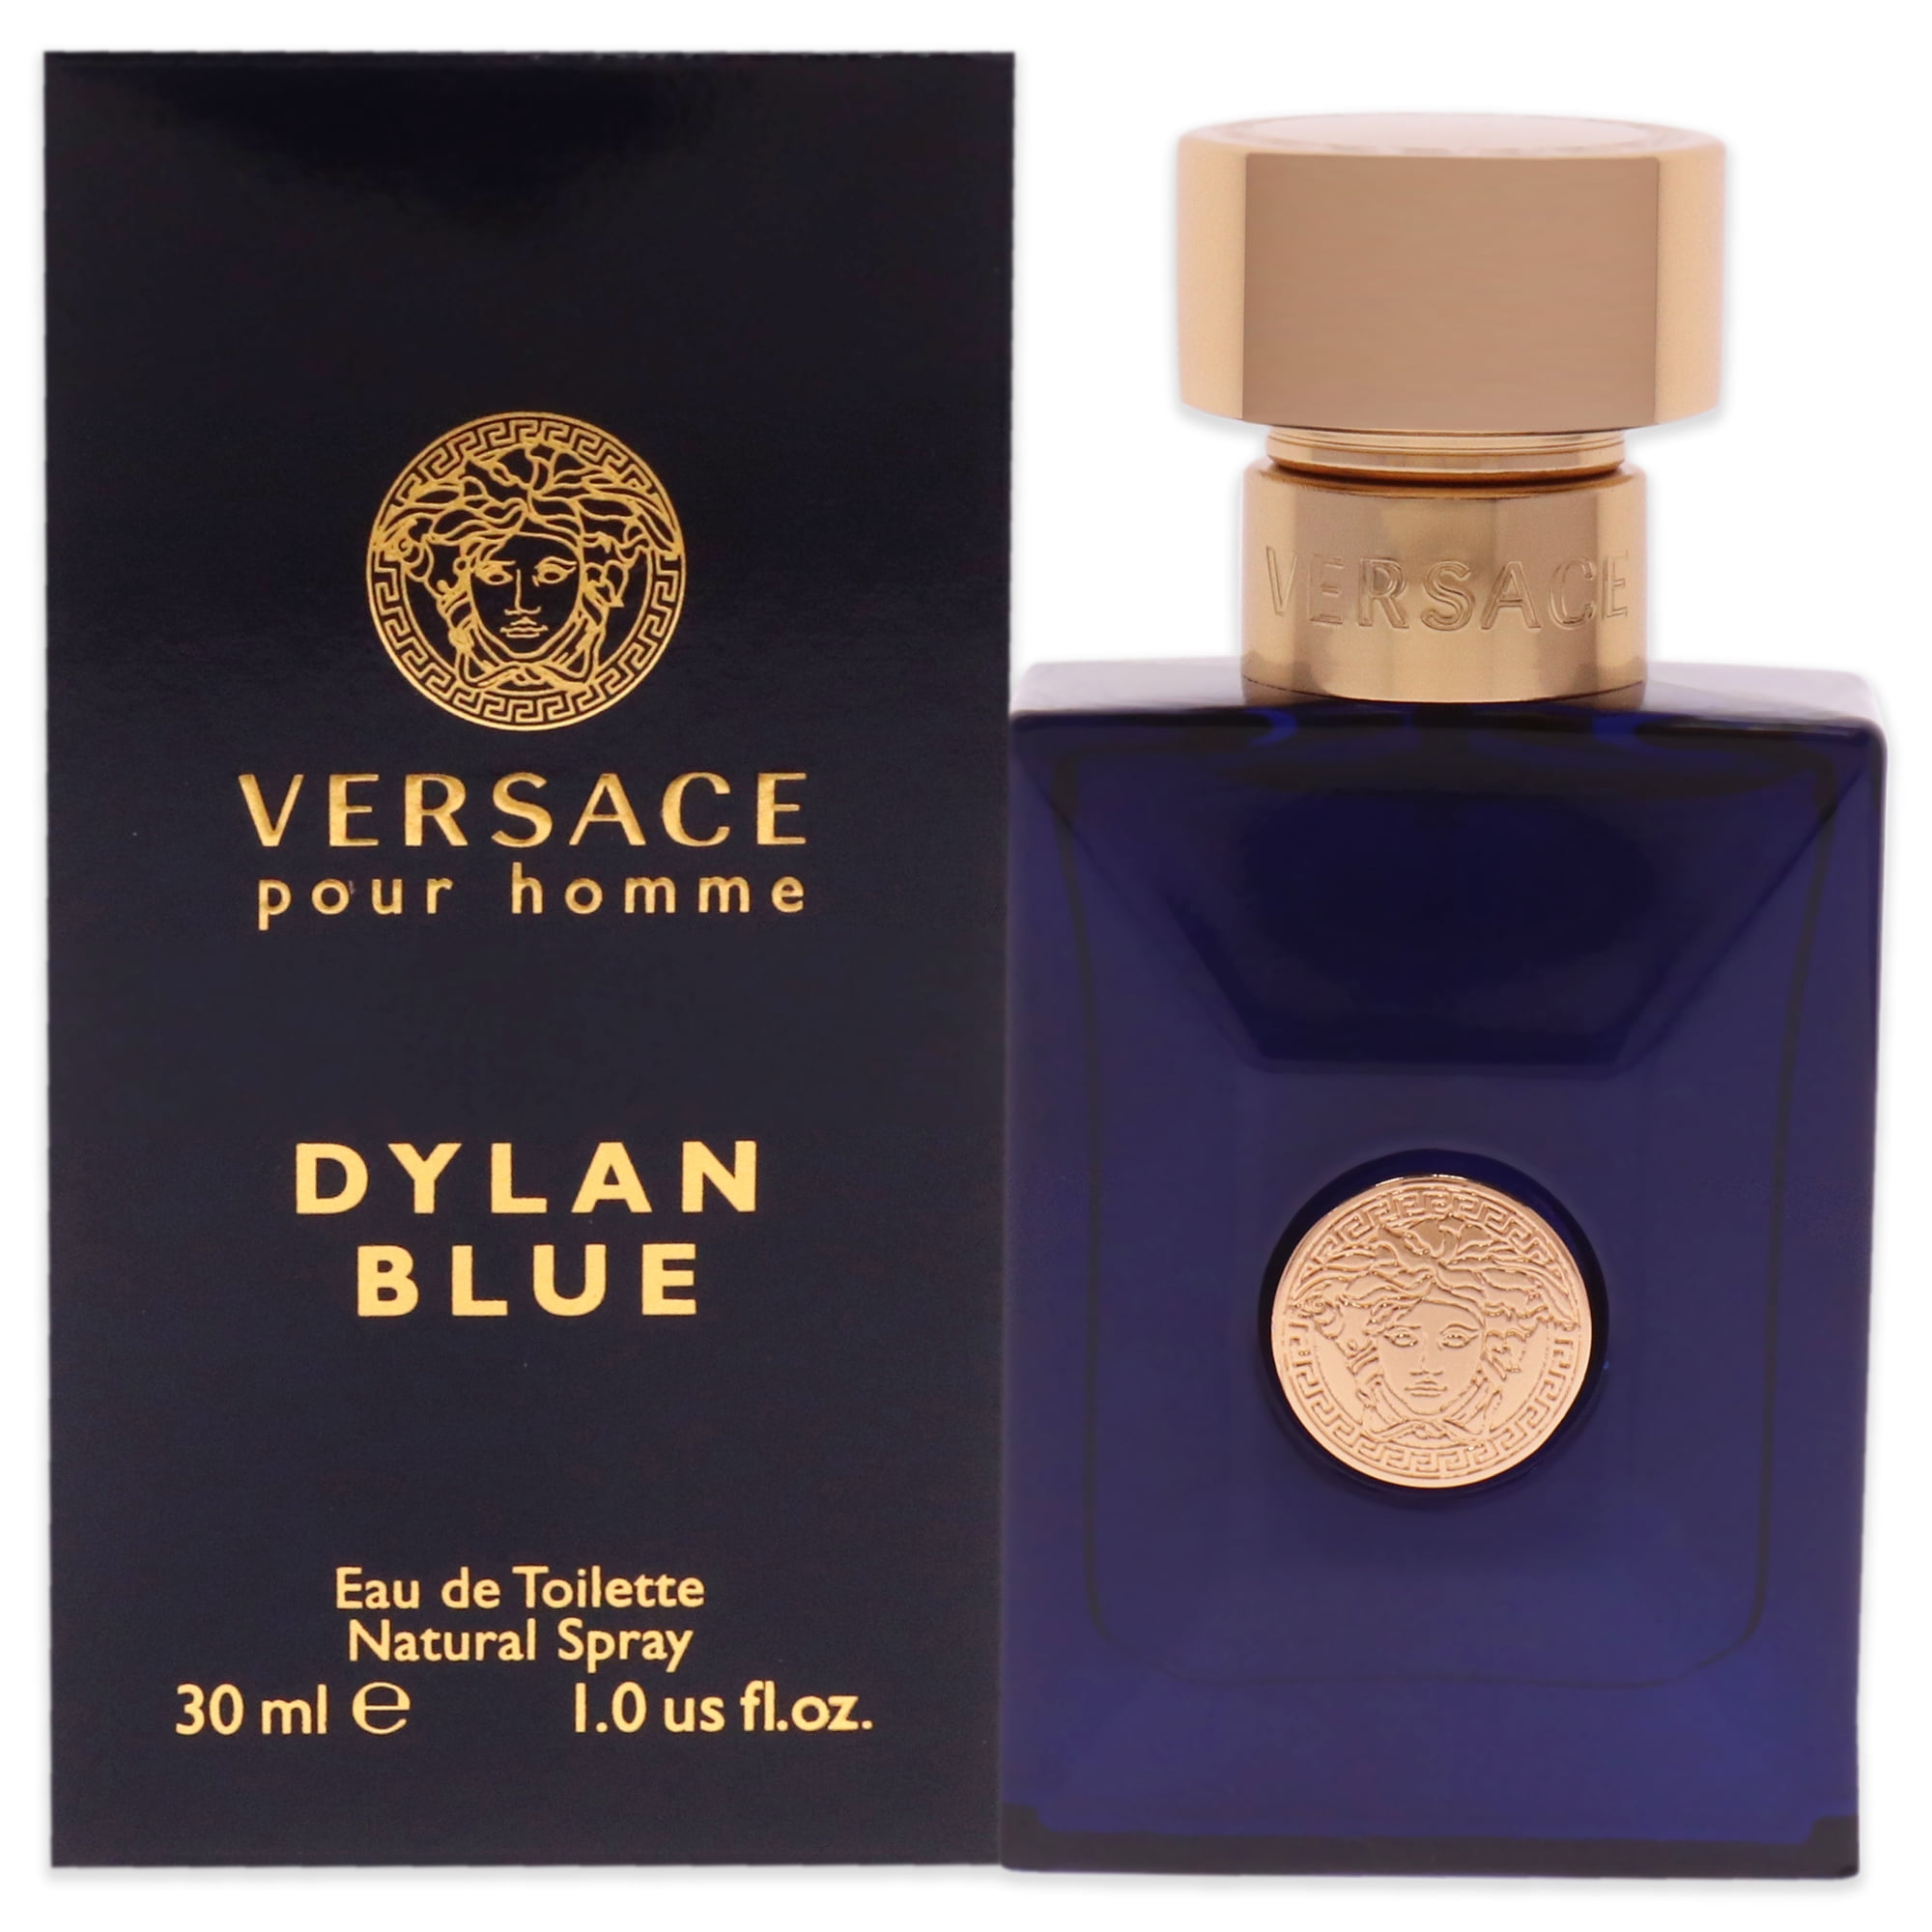 Versace Dylan Blue Eau De Toilette Spray, Cologne for Men, 1.0 Oz